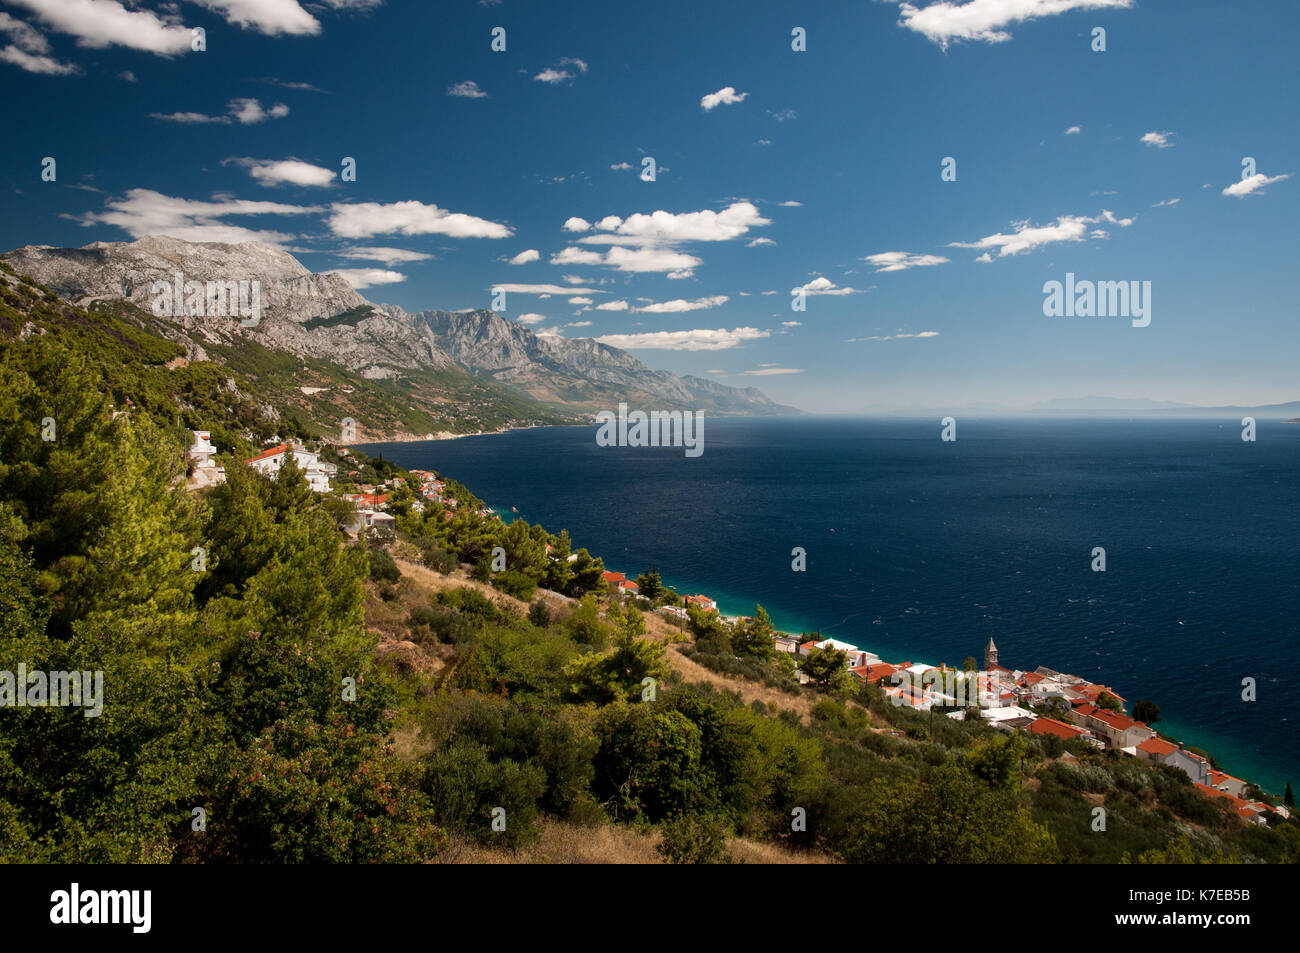 Croatie pisak village sur la côte de meer sous ciel bleu avec des nuages blancs Banque D'Images